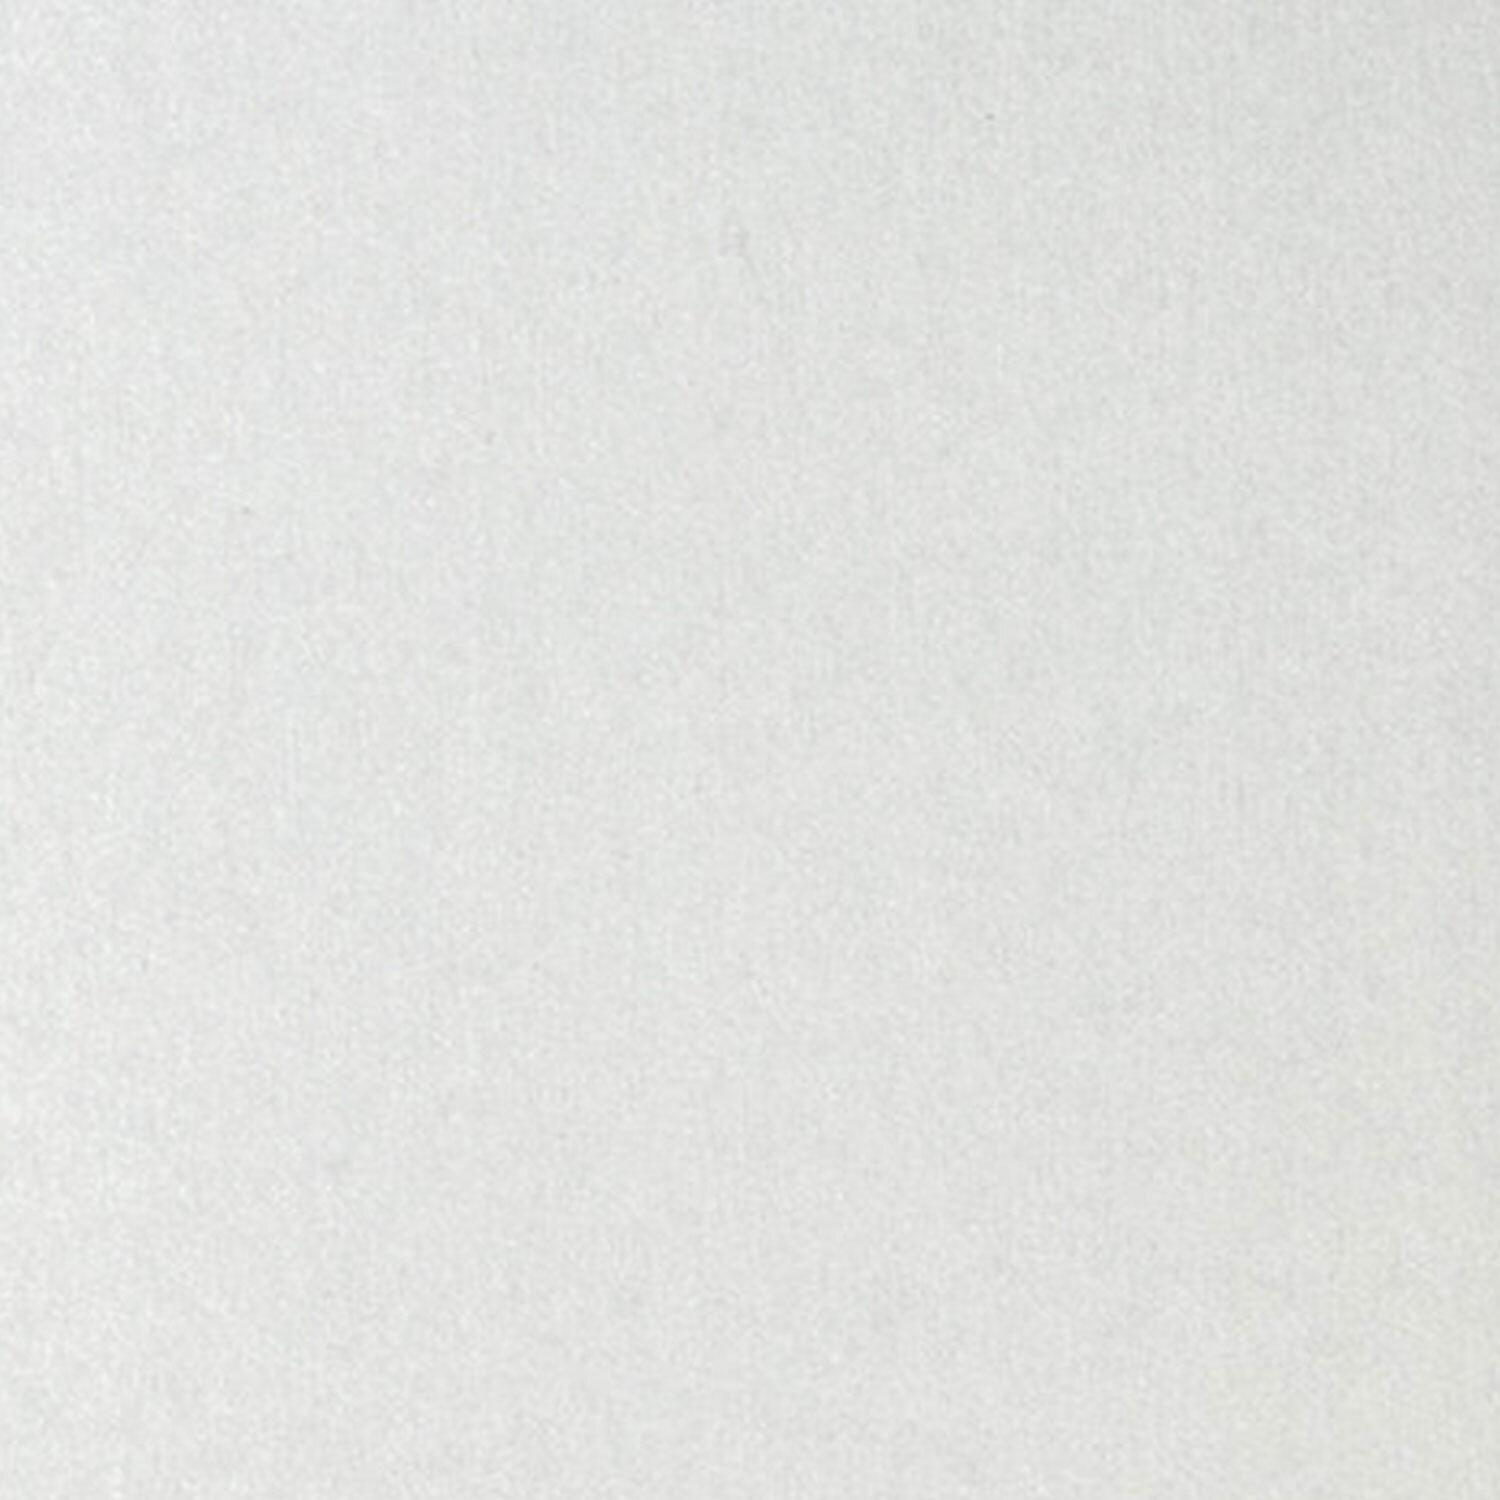 Картон белый А4 немелованный,  8 листов, в папке, ПИФАГОР, 200х290мм, Пингвин-рыболов, 129905